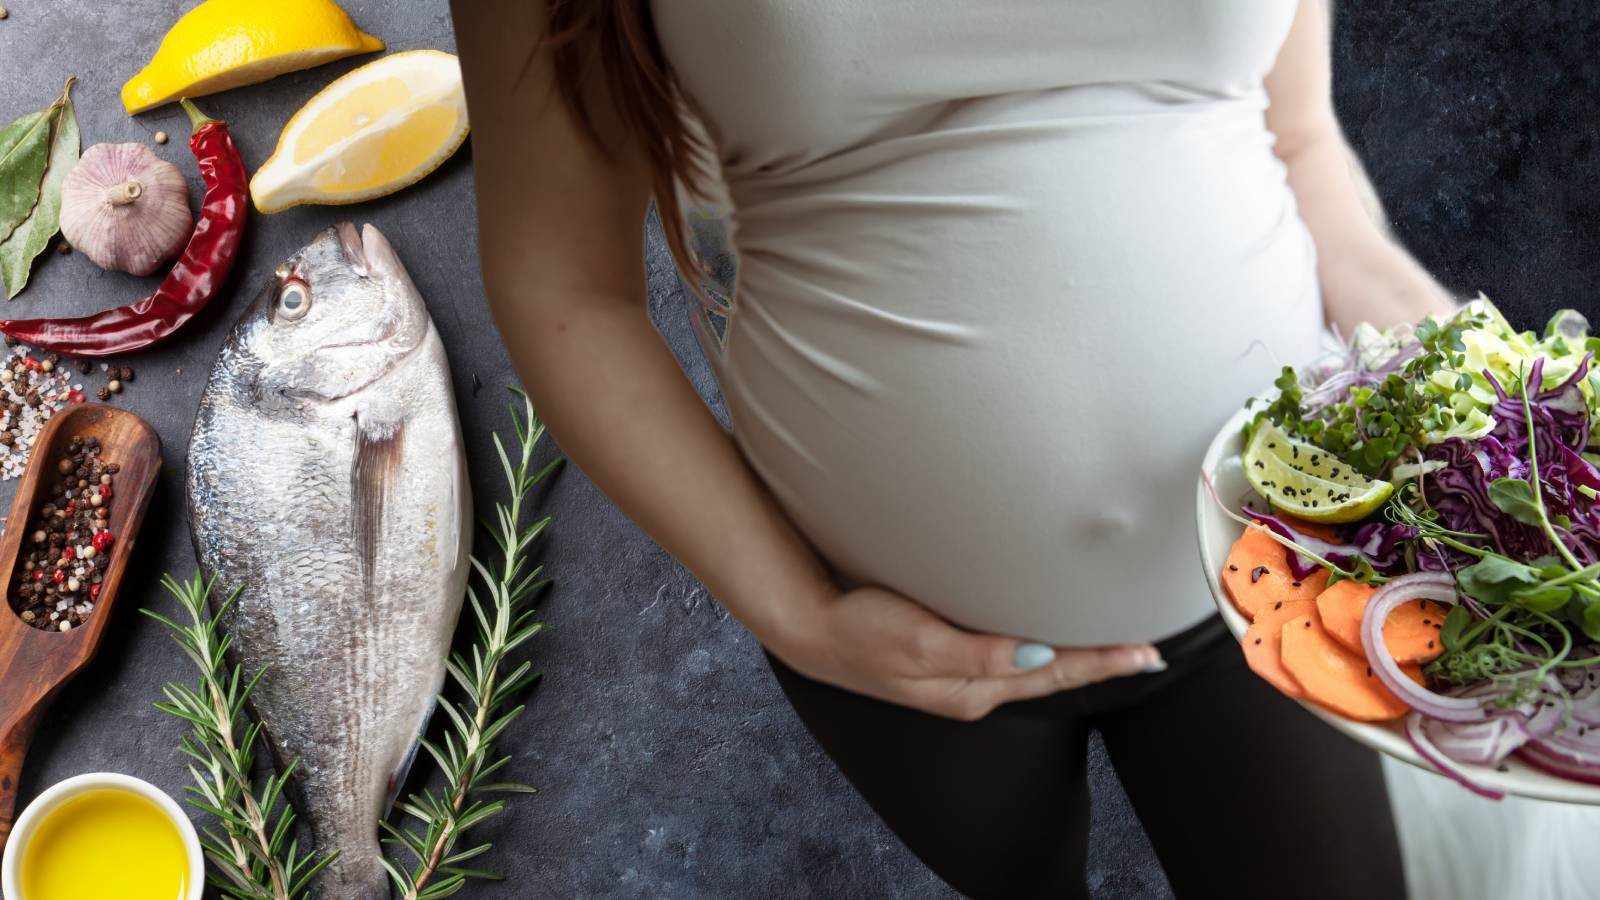 Hamile kadınlar hangi balıkları yememeli? Lüfer, levrek, trança...